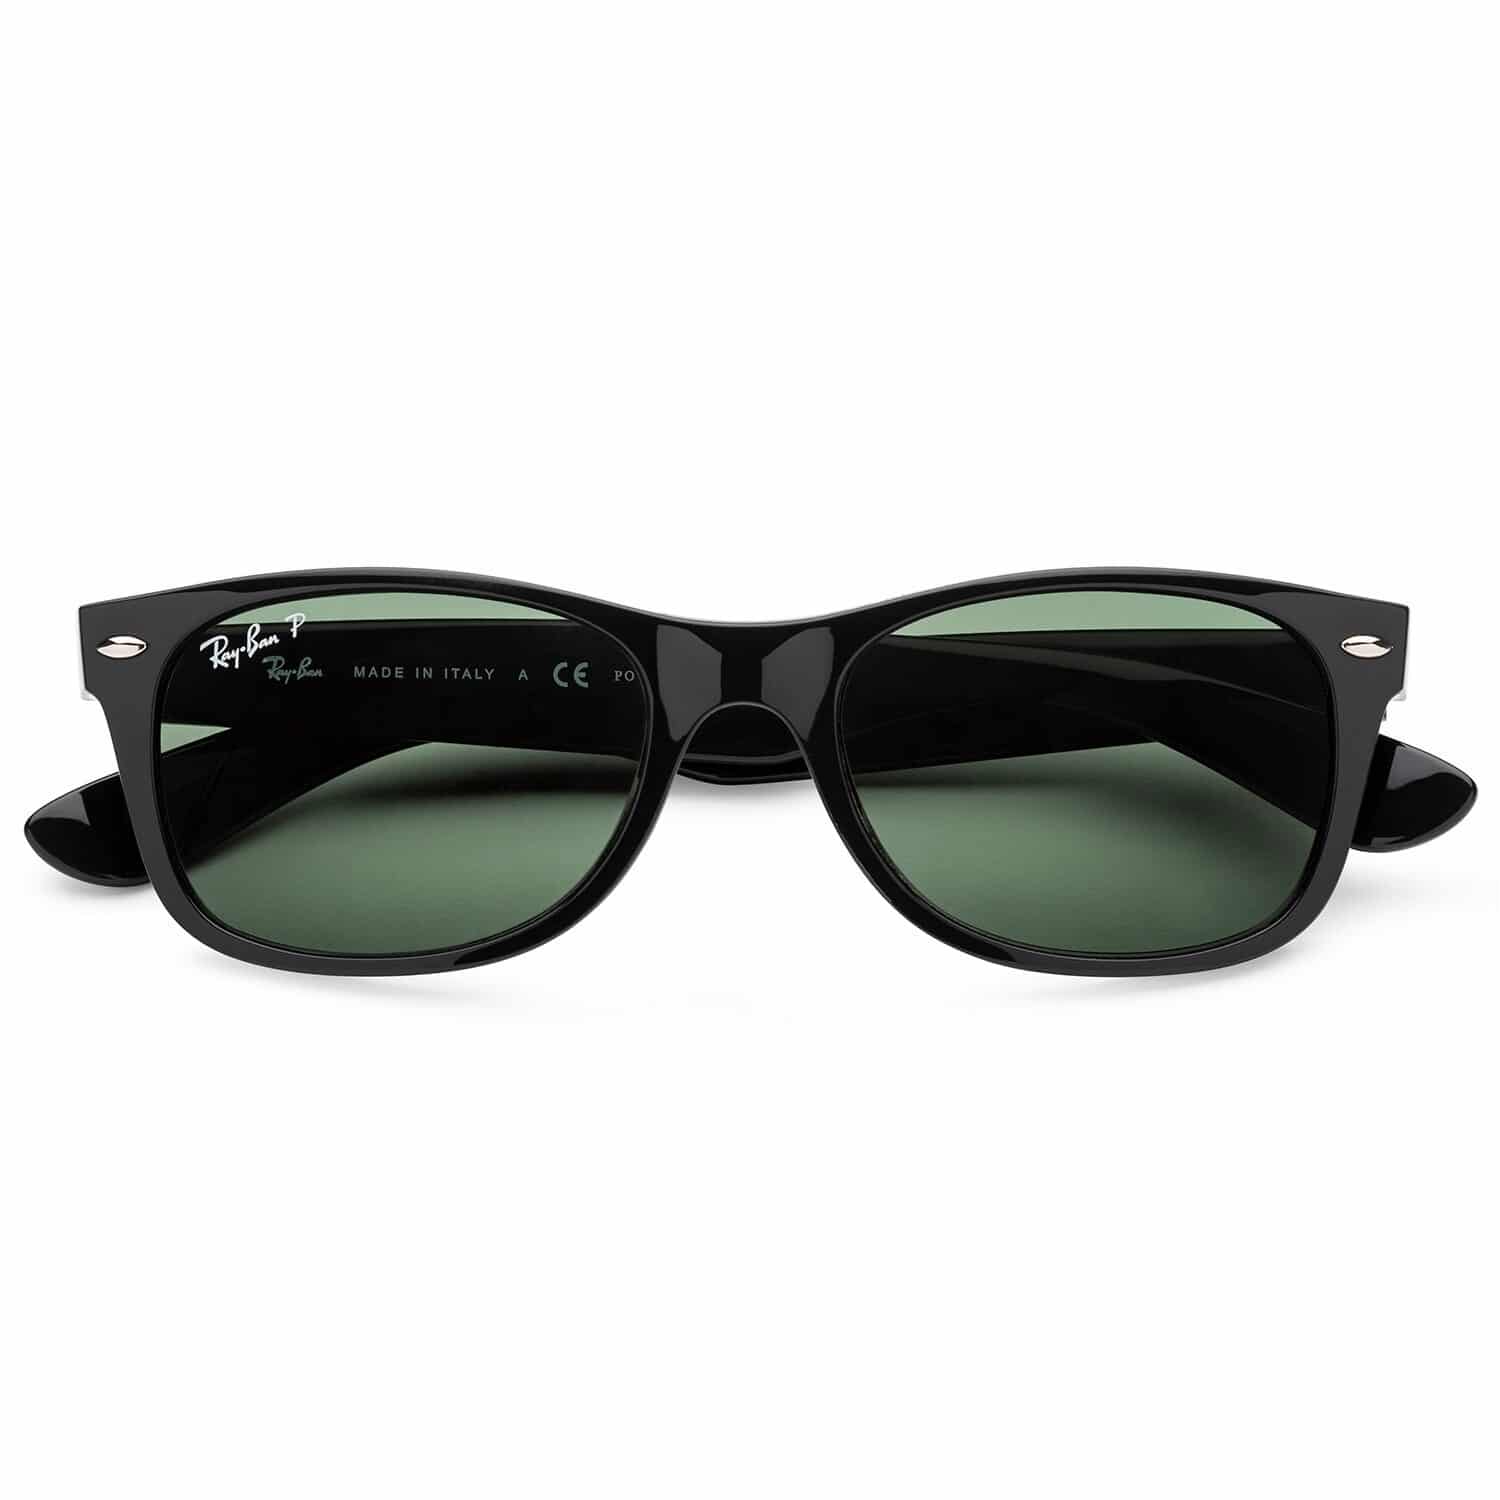 Ray Ban Wayfarer Polarized Sunglasses S 5852 Sunlab Malta